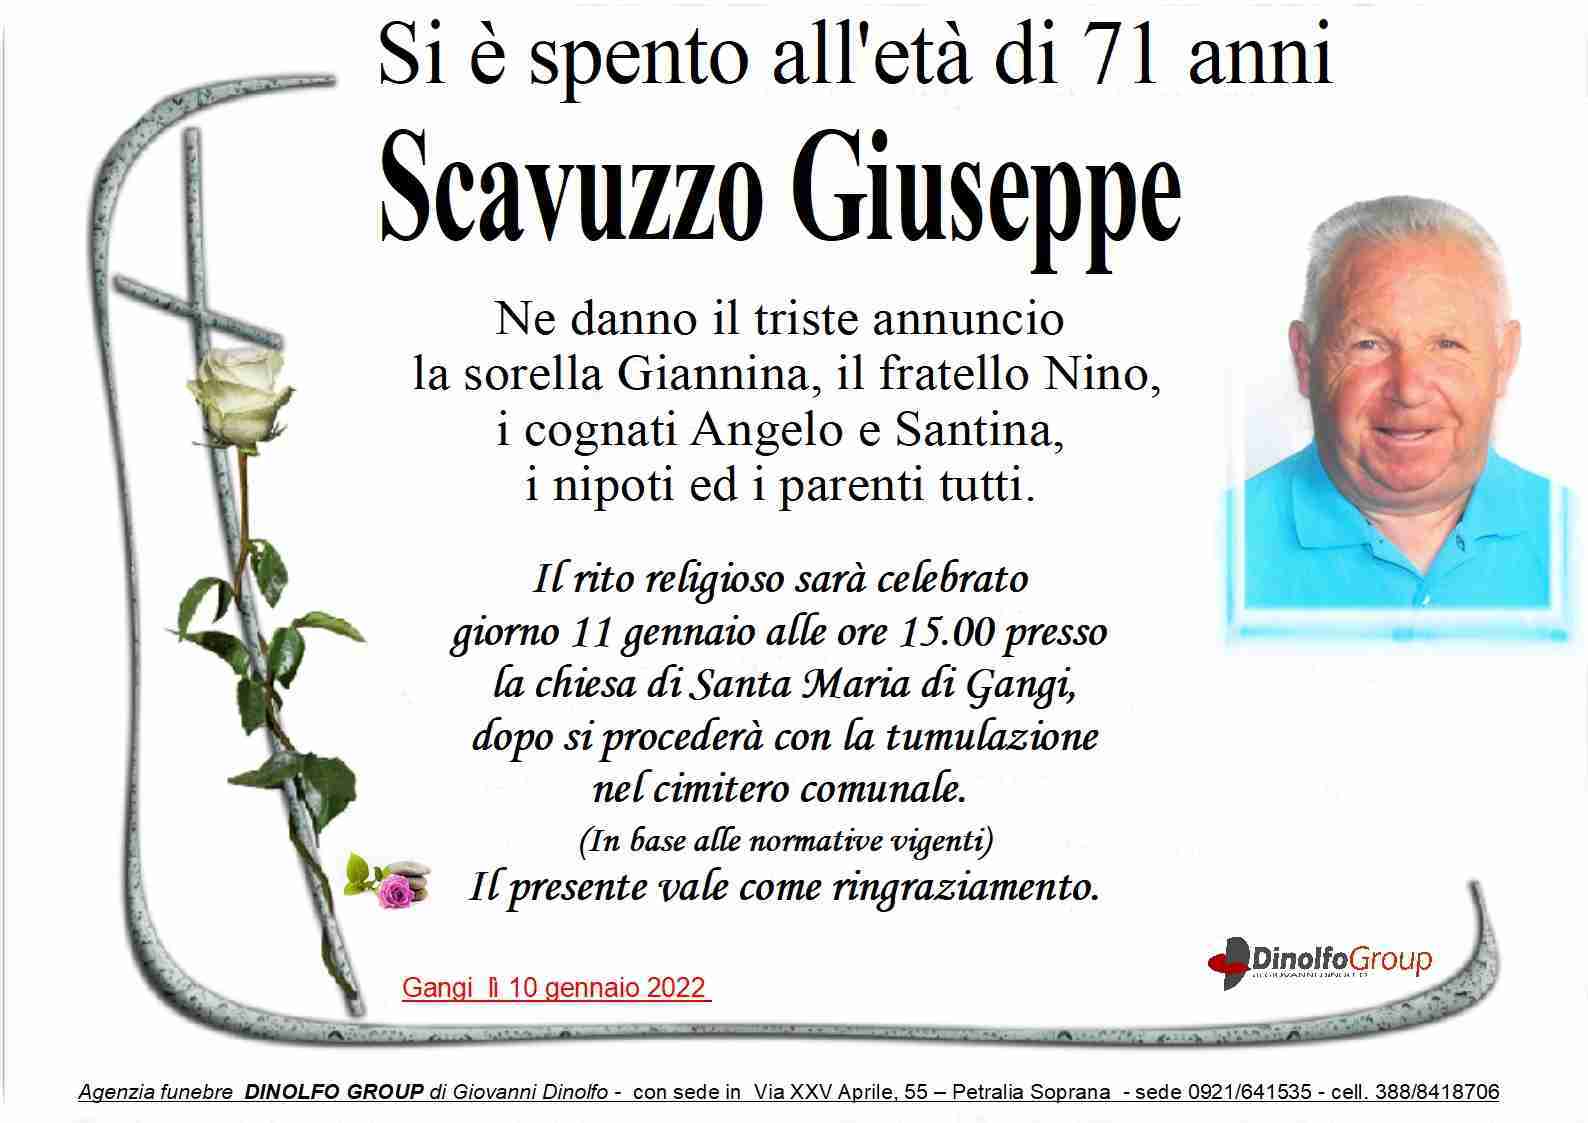 Giuseppe Scavuzzo